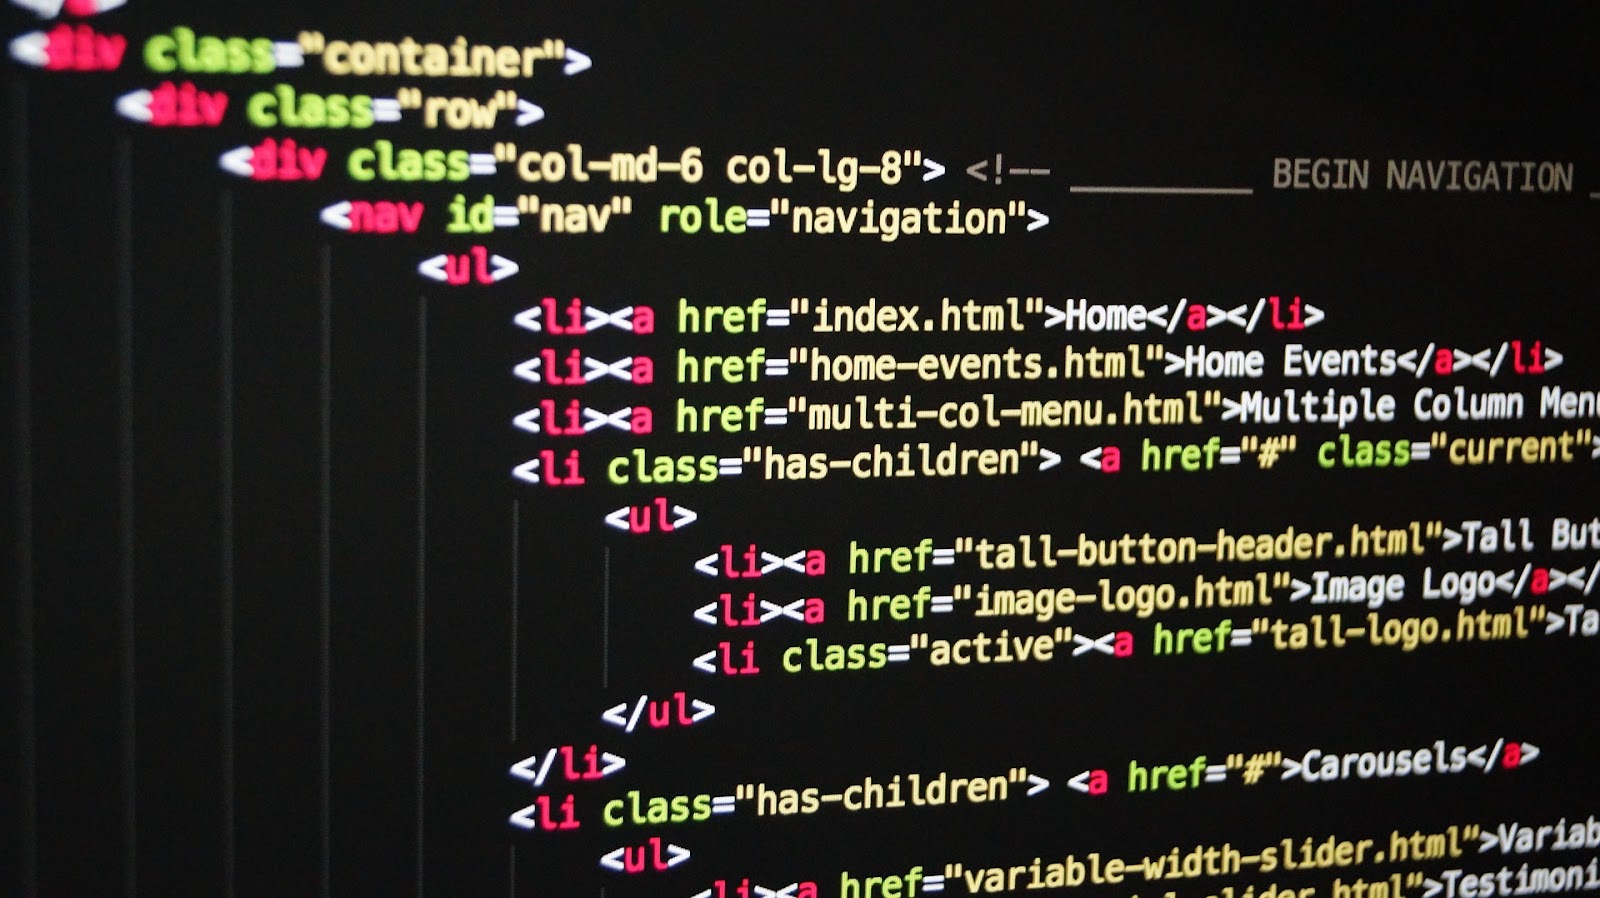 Na imagem vemos um fragmento de uma tela com códigos HTML para a construção de uma página web 